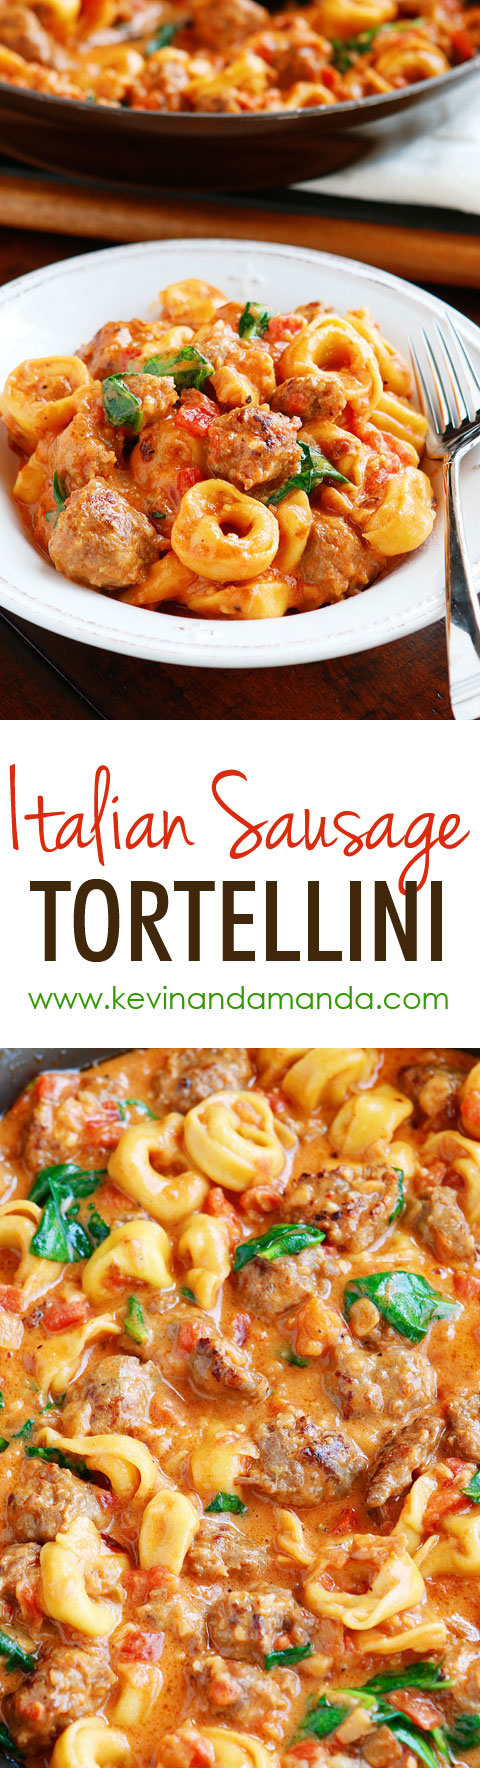 Best Tortellini Recipes: Italian Sausage Tortellini